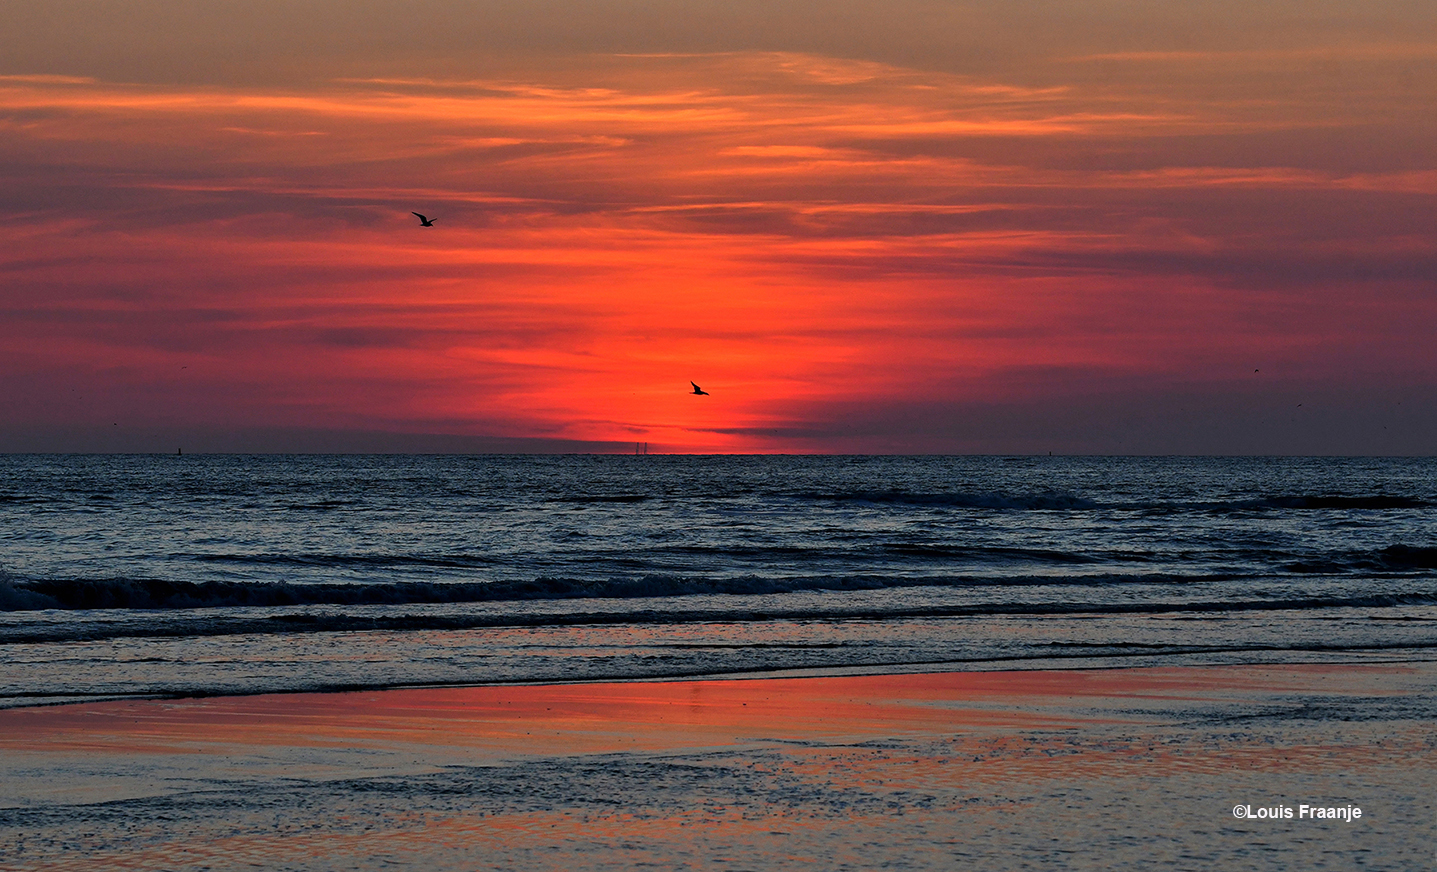 Als de zon eenmaal is verdwenen, kleurt de avondhemel prachtig rood en oranje - Foto: ©Louis Fraanje